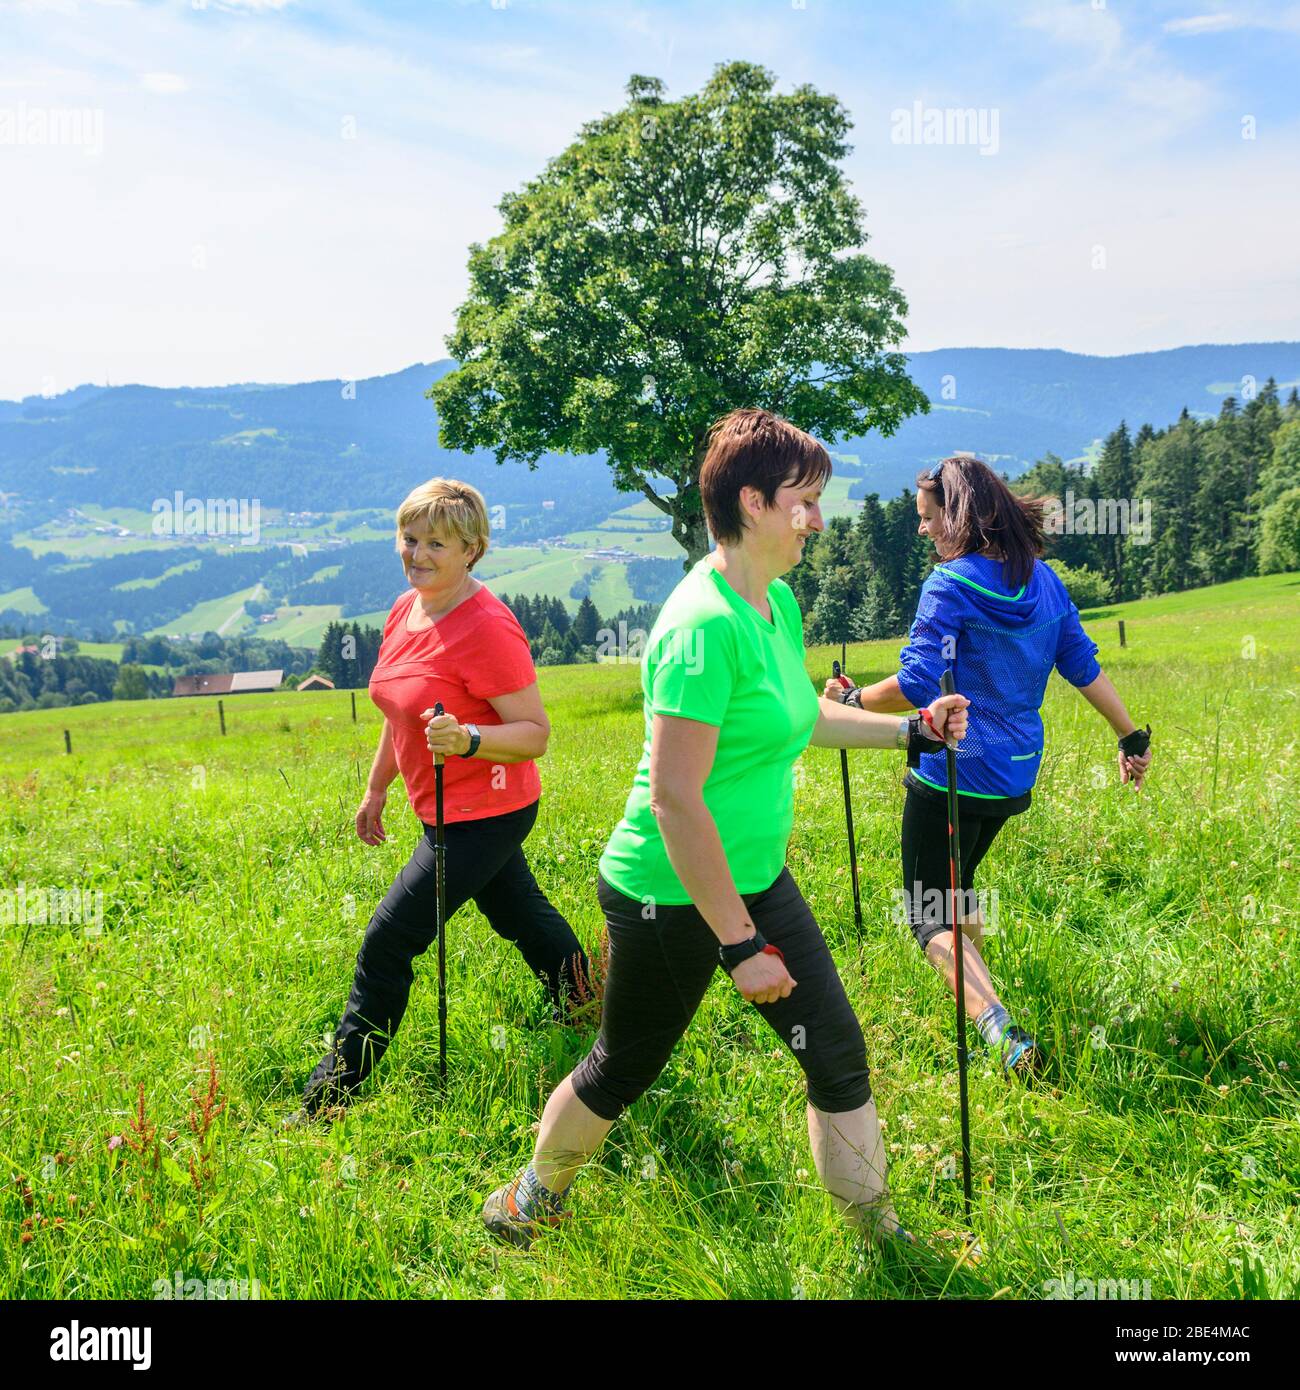 Entrenamiento físico en naturaleza verde con ejercicios de marcha nórdica Foto de stock